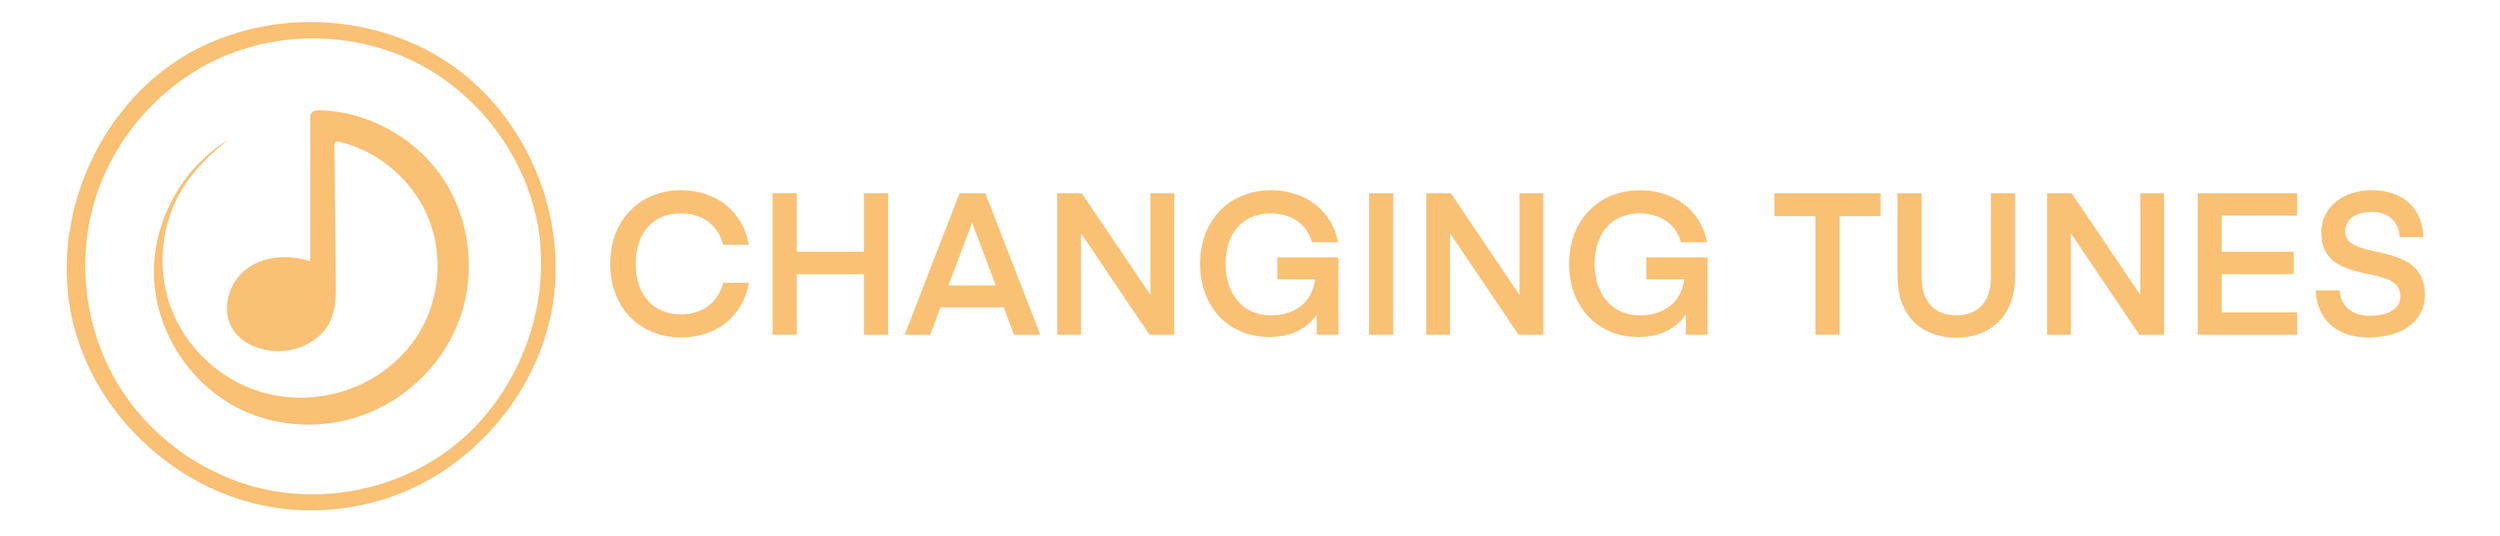 Orange narrow logo.png